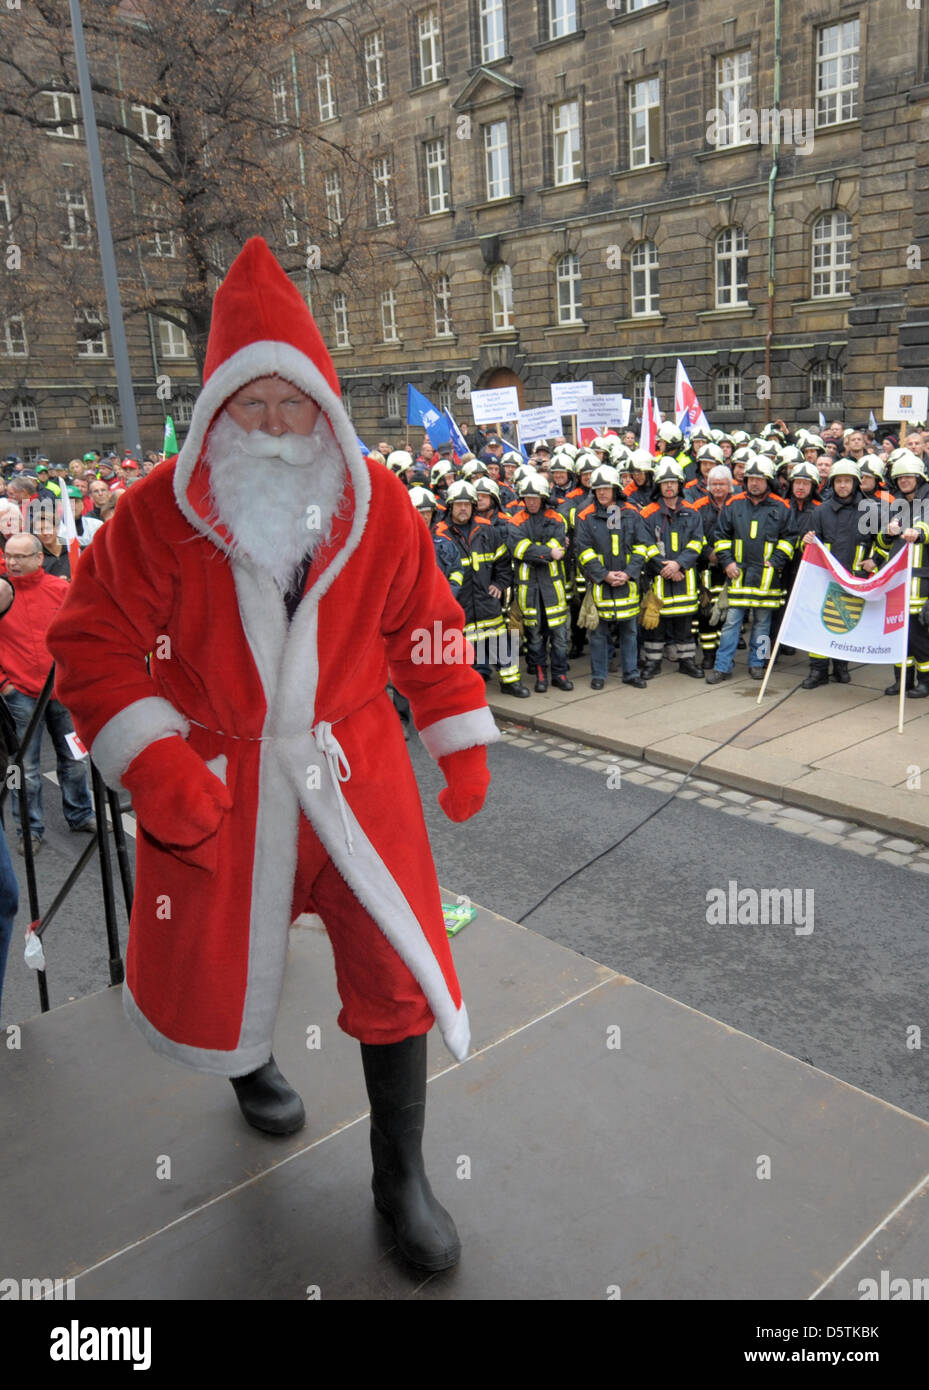 Les policiers, les pompiers et les employés du secteur public demonstarte contre les plans d'austérité du gouvernement de l'état à Dresde, Allemagne, 27 novembre 2012. Photo : MATTHIAS HIEKEL Banque D'Images